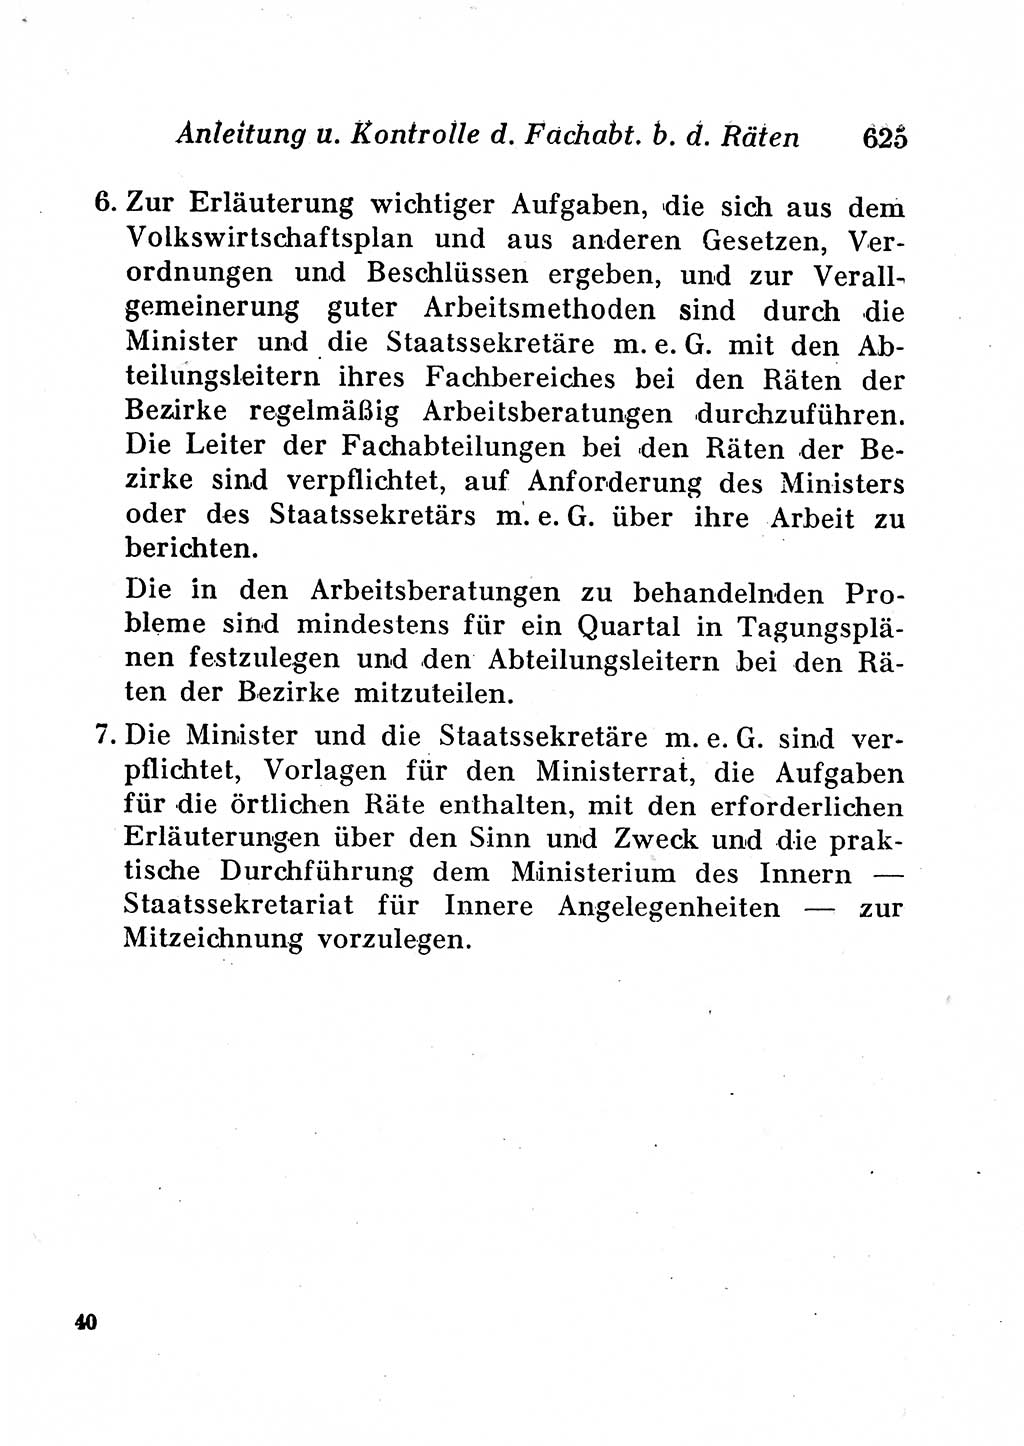 Staats- und verwaltungsrechtliche Gesetze der Deutschen Demokratischen Republik (DDR) 1958, Seite 625 (StVerwR Ges. DDR 1958, S. 625)